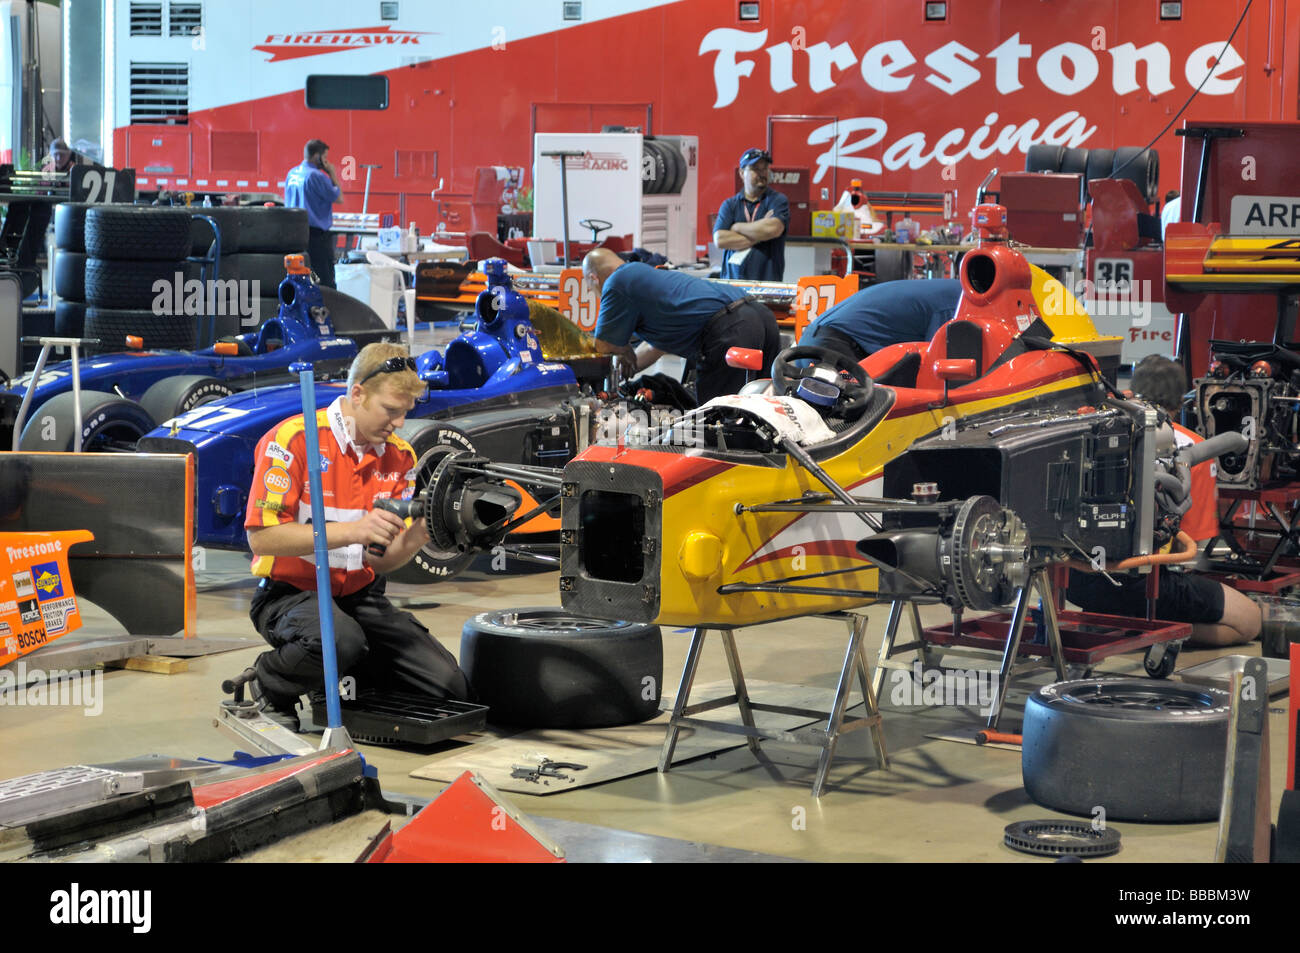 Mechaniker bei der Arbeit auf bunten Indy-Rennwagen Stockfoto